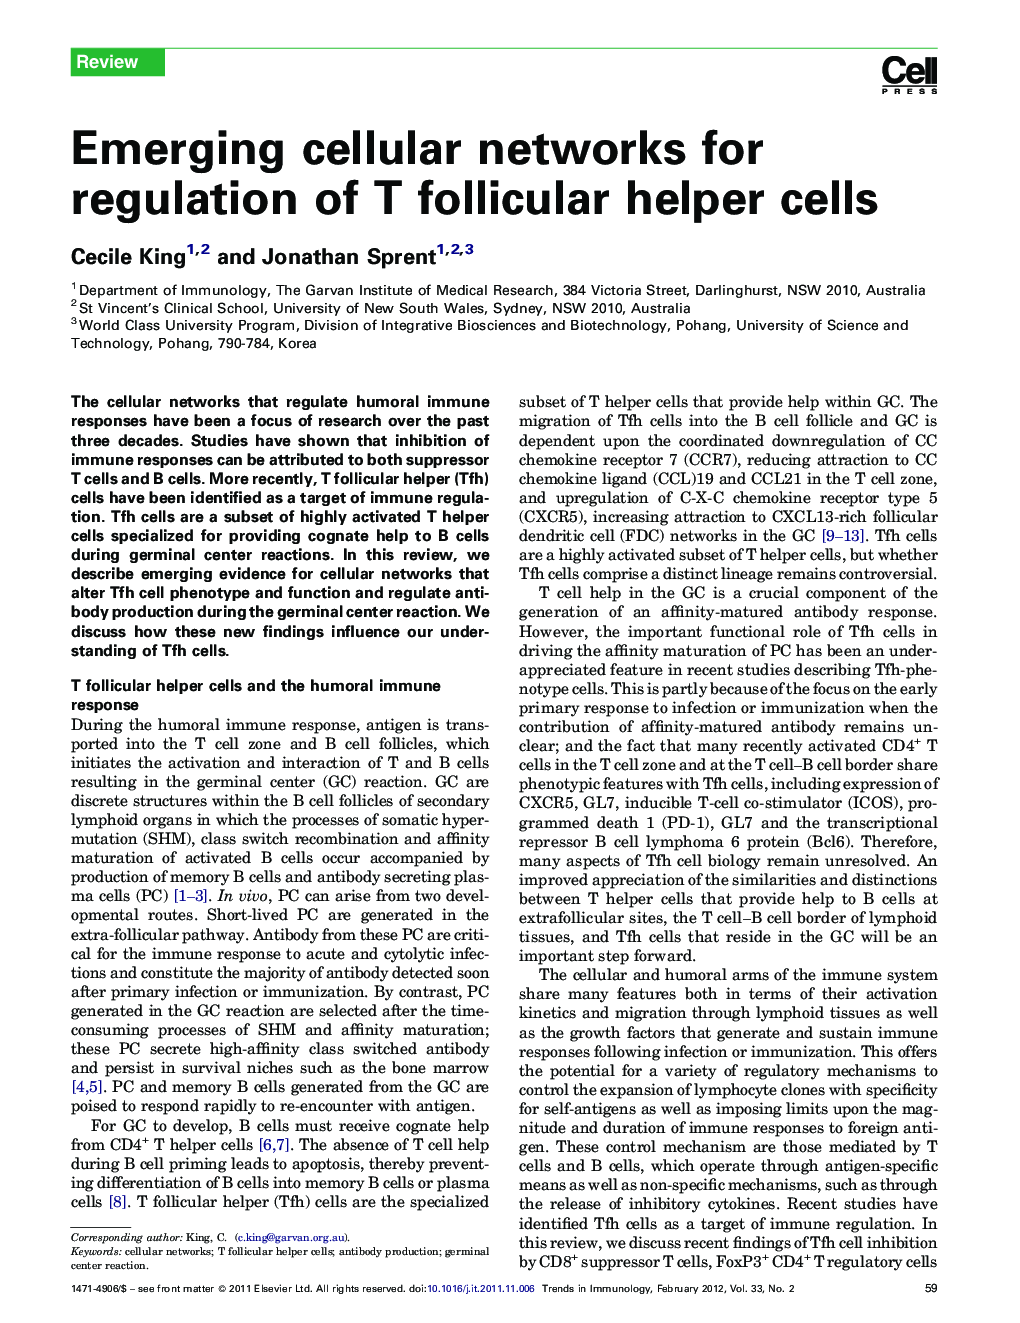 Emerging cellular networks for regulation of T follicular helper cells